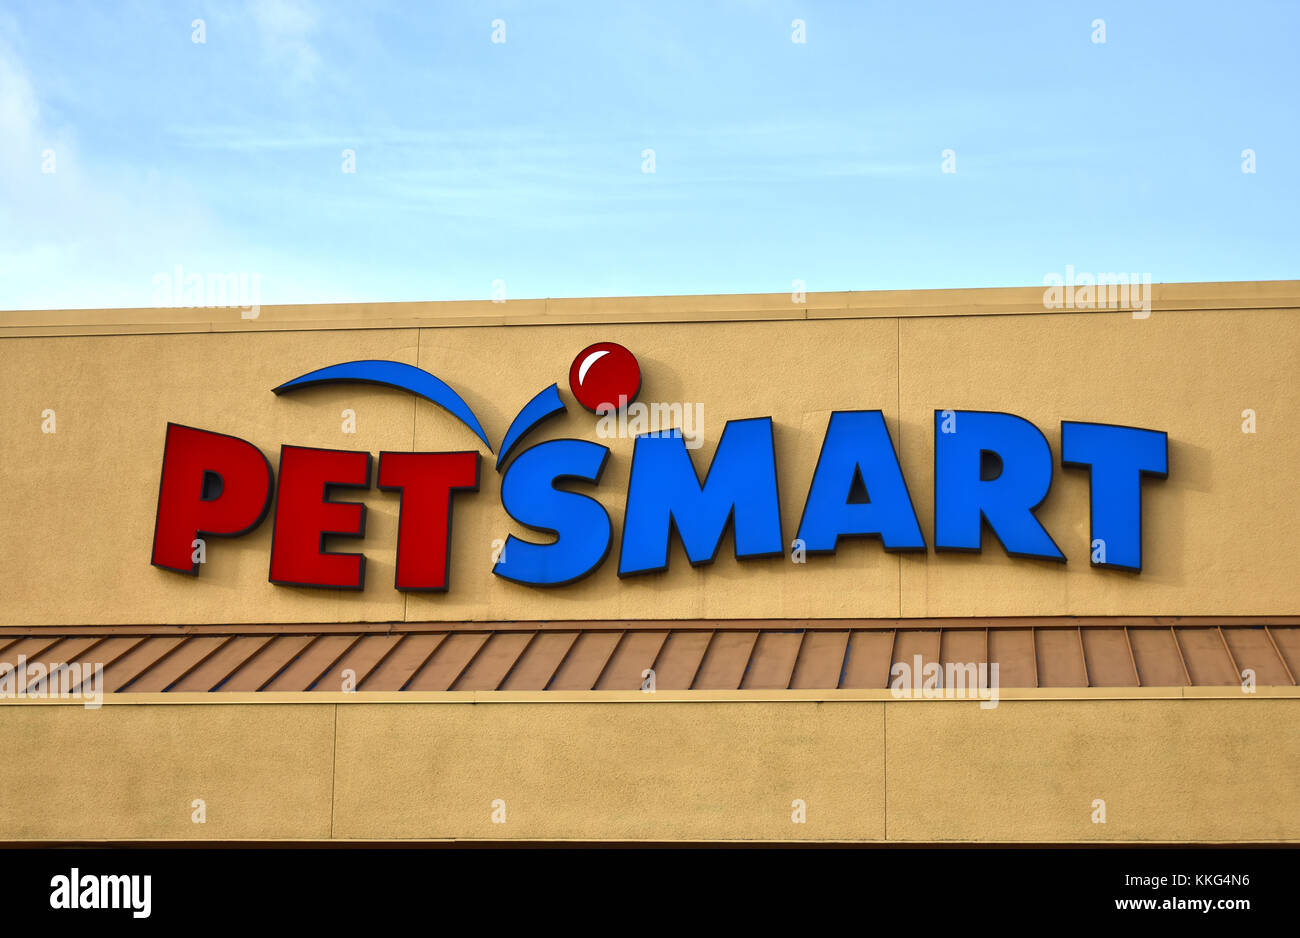 Petsmart Store And Logo Stock Photo 166926738 Alamy